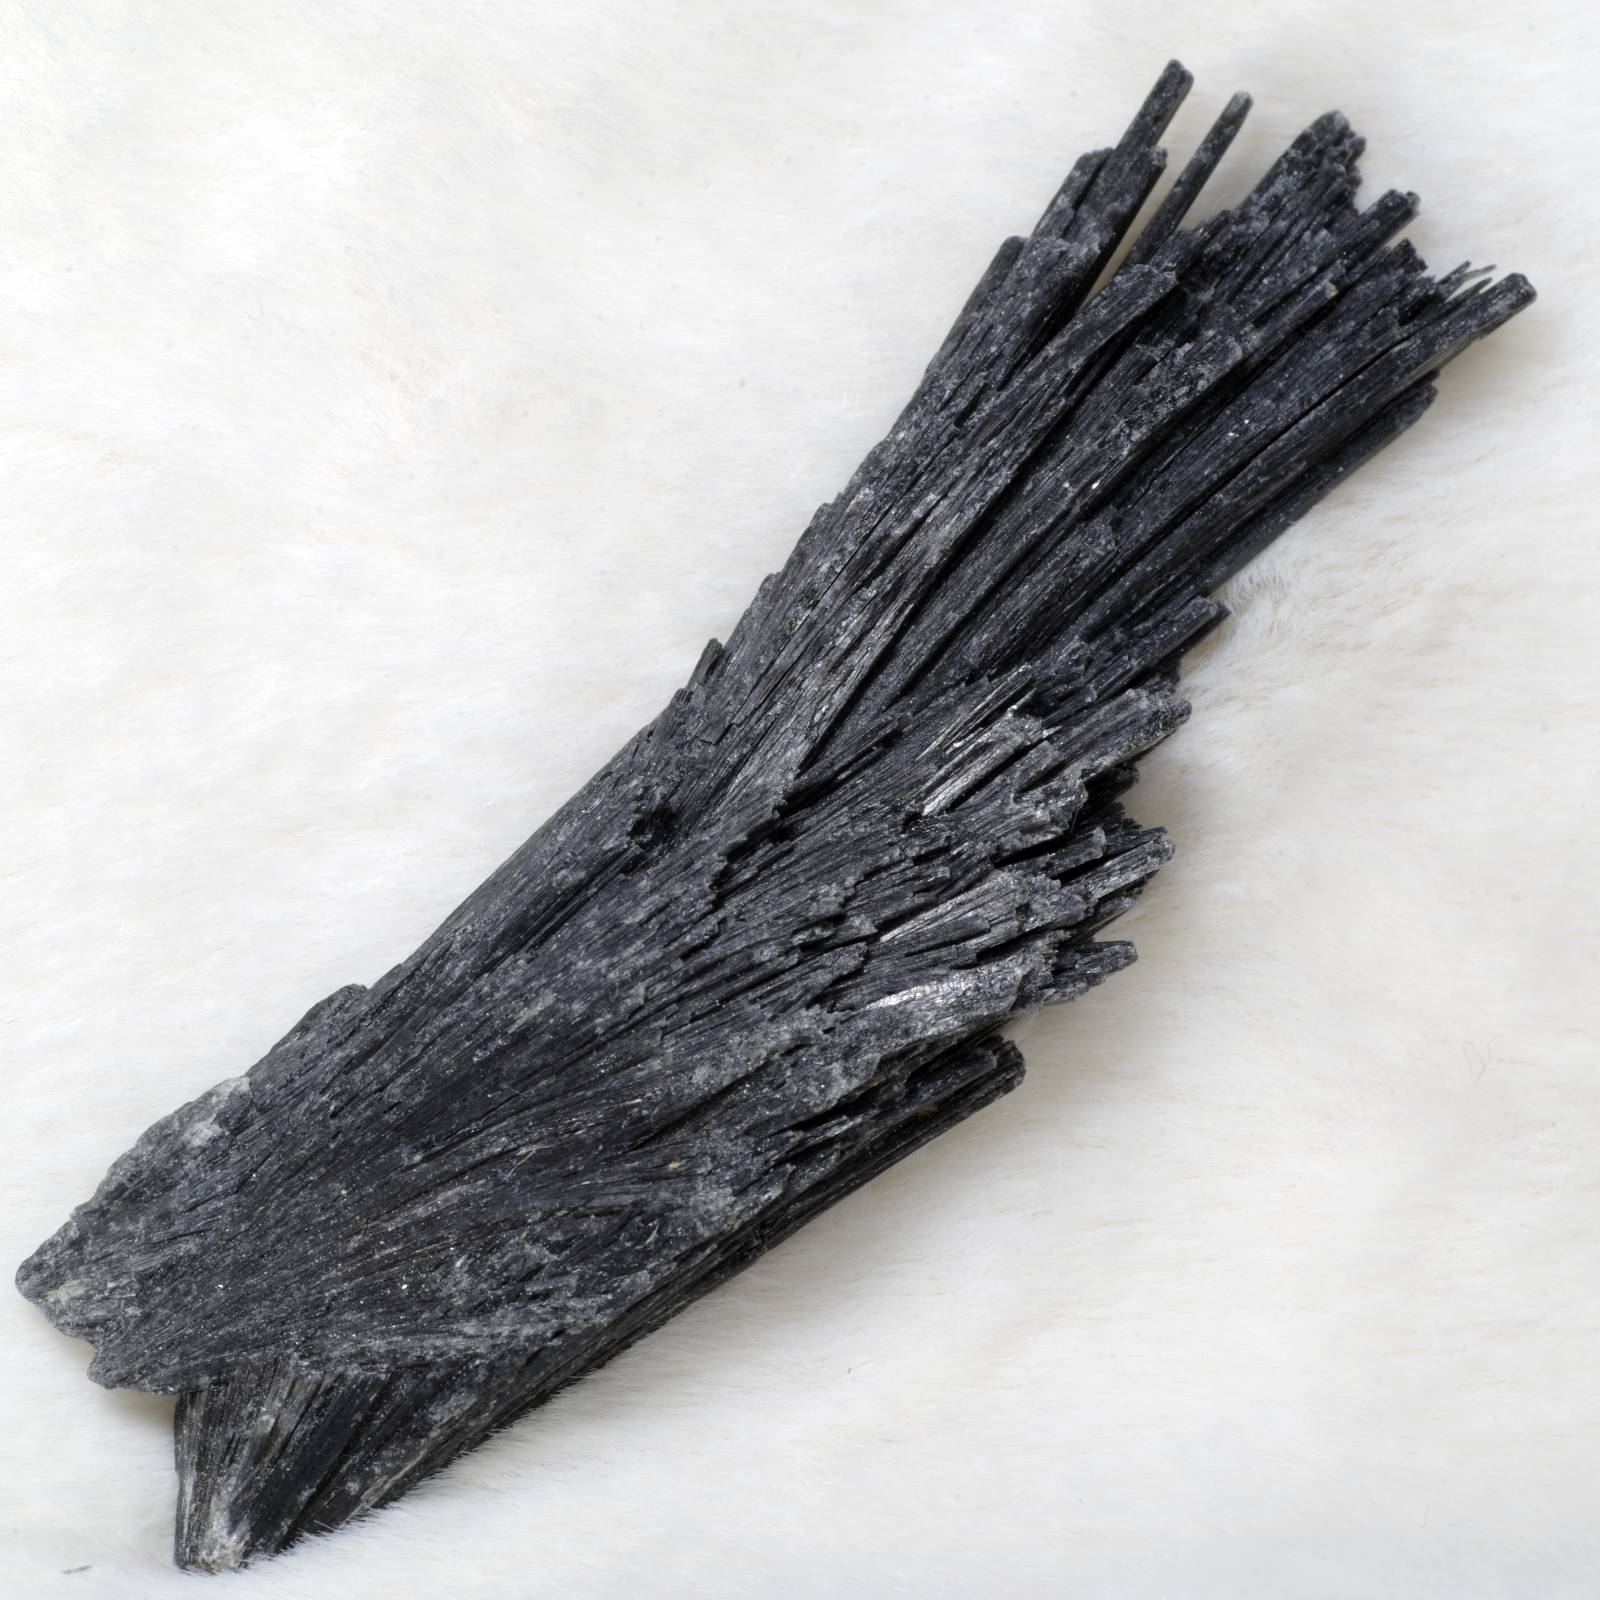 カイヤナイト 藍晶石 黒 ブラジル産3 Black Kyanite Brazil 原石 写真 ...